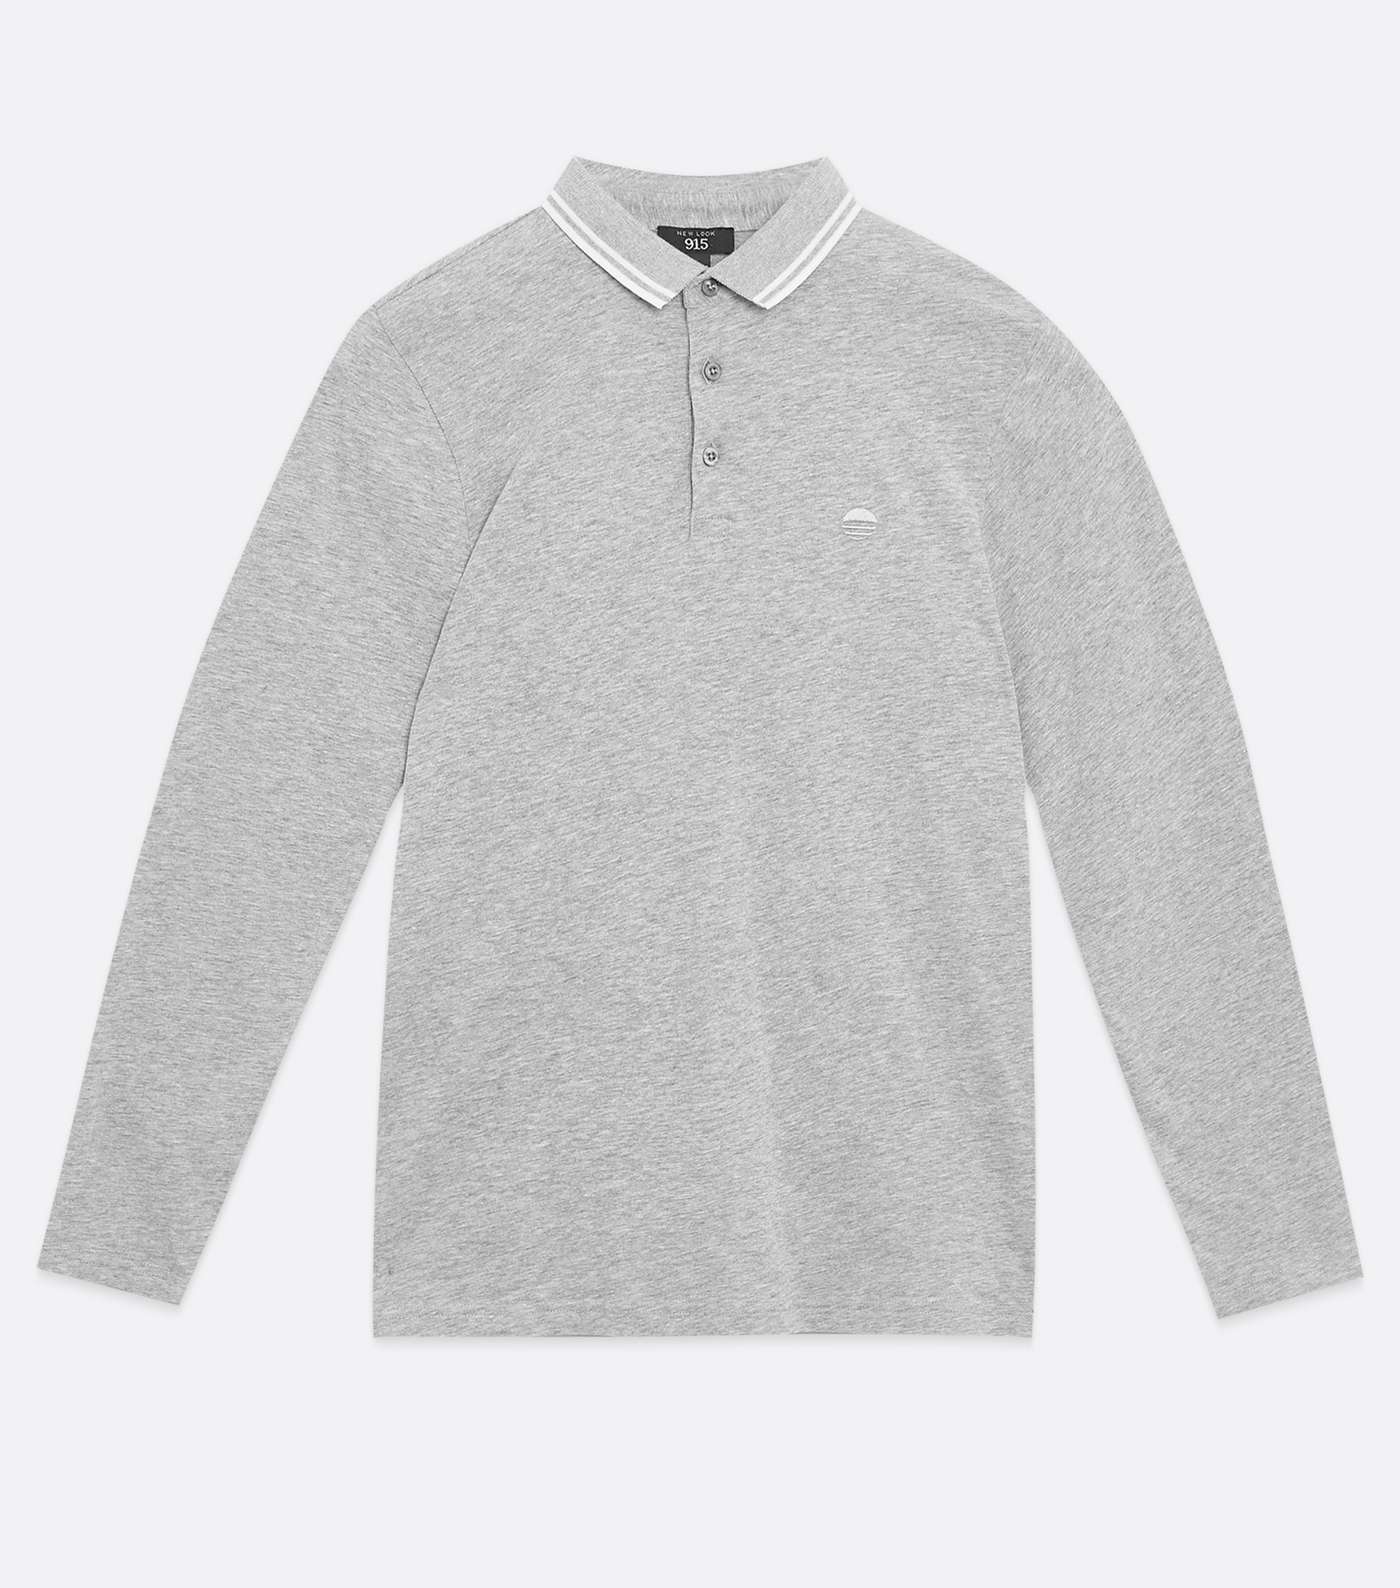 Boys Grey Embroidered Long Sleeve Polo Shirt Image 5